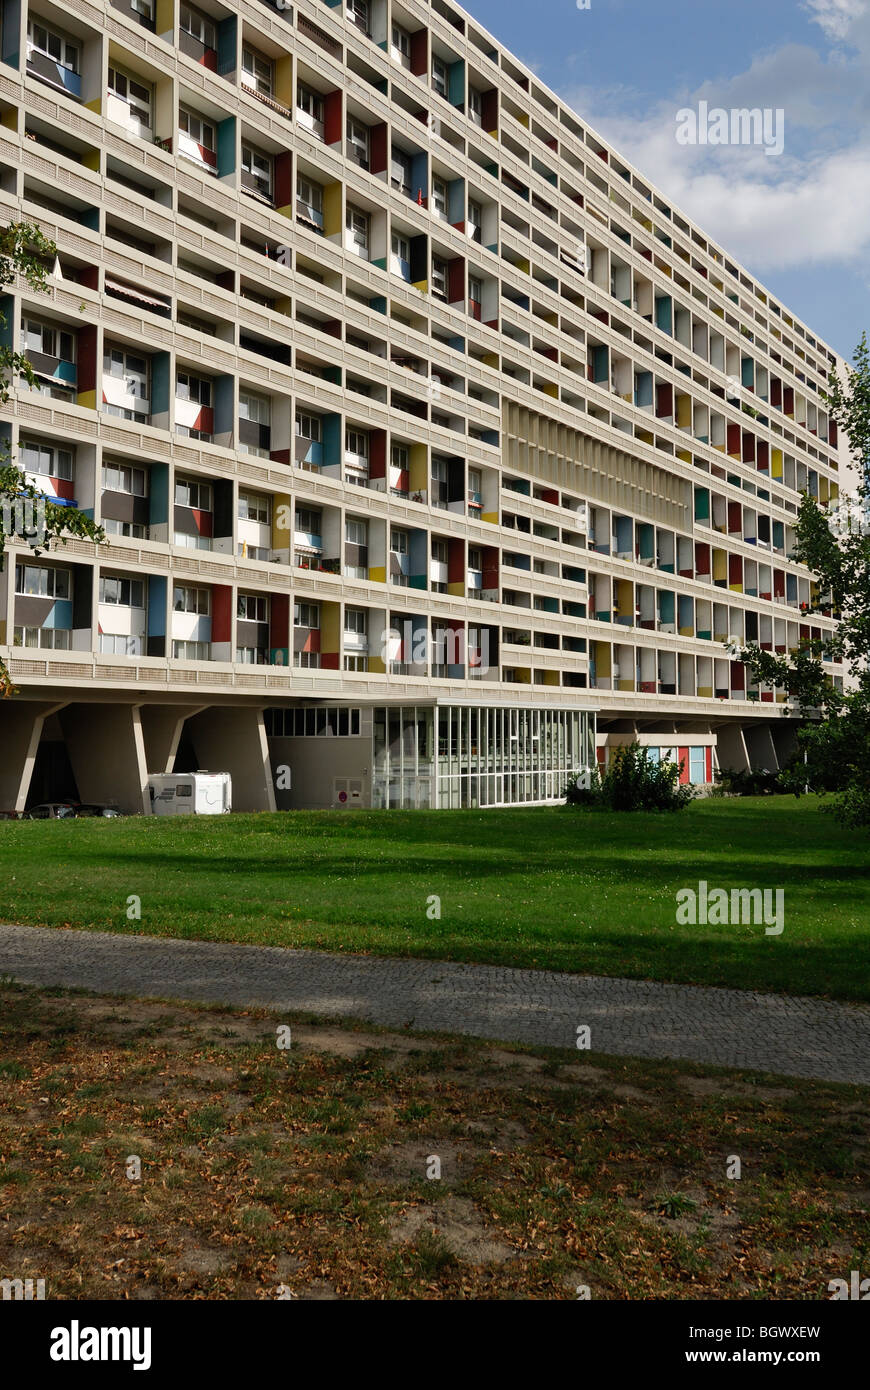 Berlino. Germania. Corbusier's Unite d'abitazione. Foto Stock